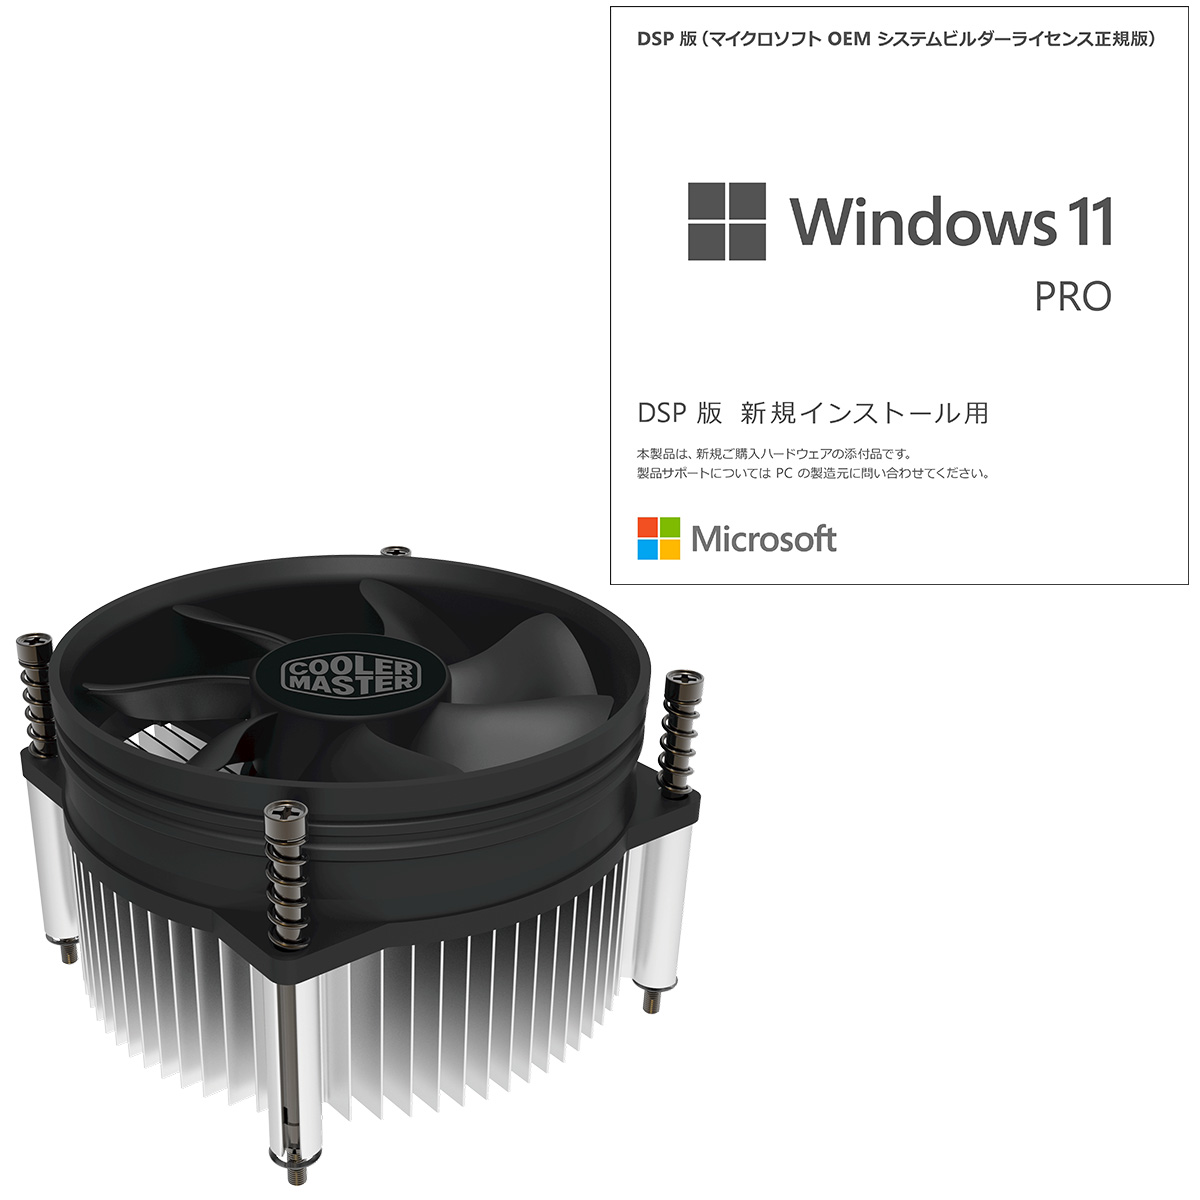 Microsoft　27,190円 20倍+50倍ポイント  Windows 11 Pro 64bit 日本語版 DSP DVD CPUクーラーセット FQC-10539/ NP 【ひかりTVショッピング】 など 他商品も掲載の場合あり